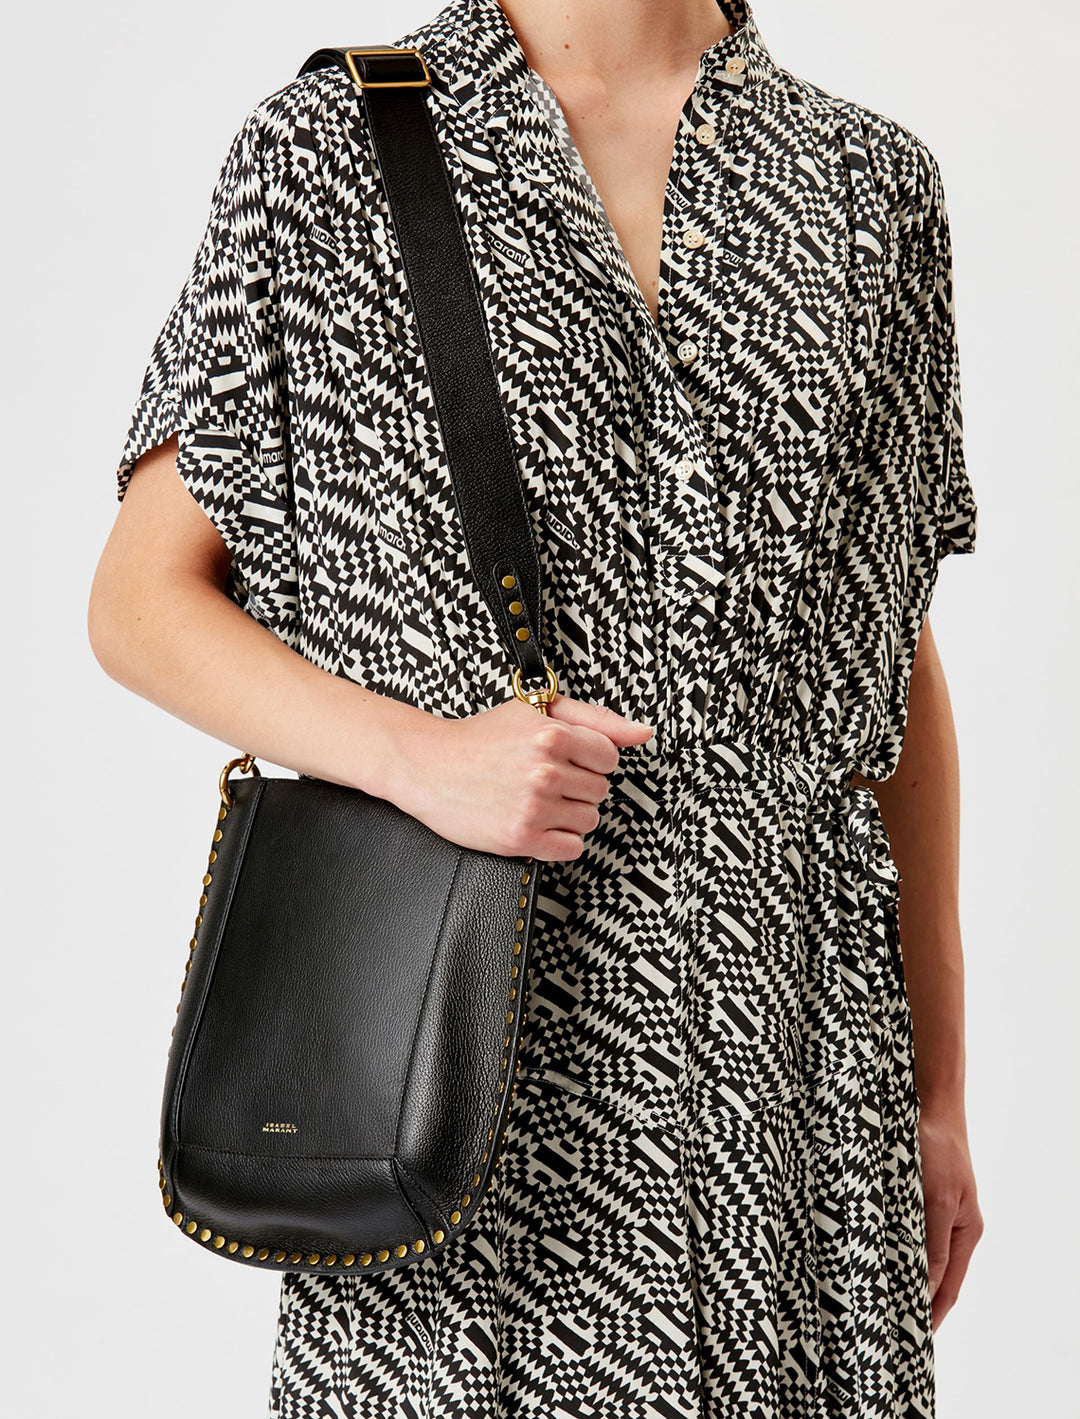 Model wearing Isabel Marant Etoile's oksan grained leather shoulder bag in black on her shoulder.